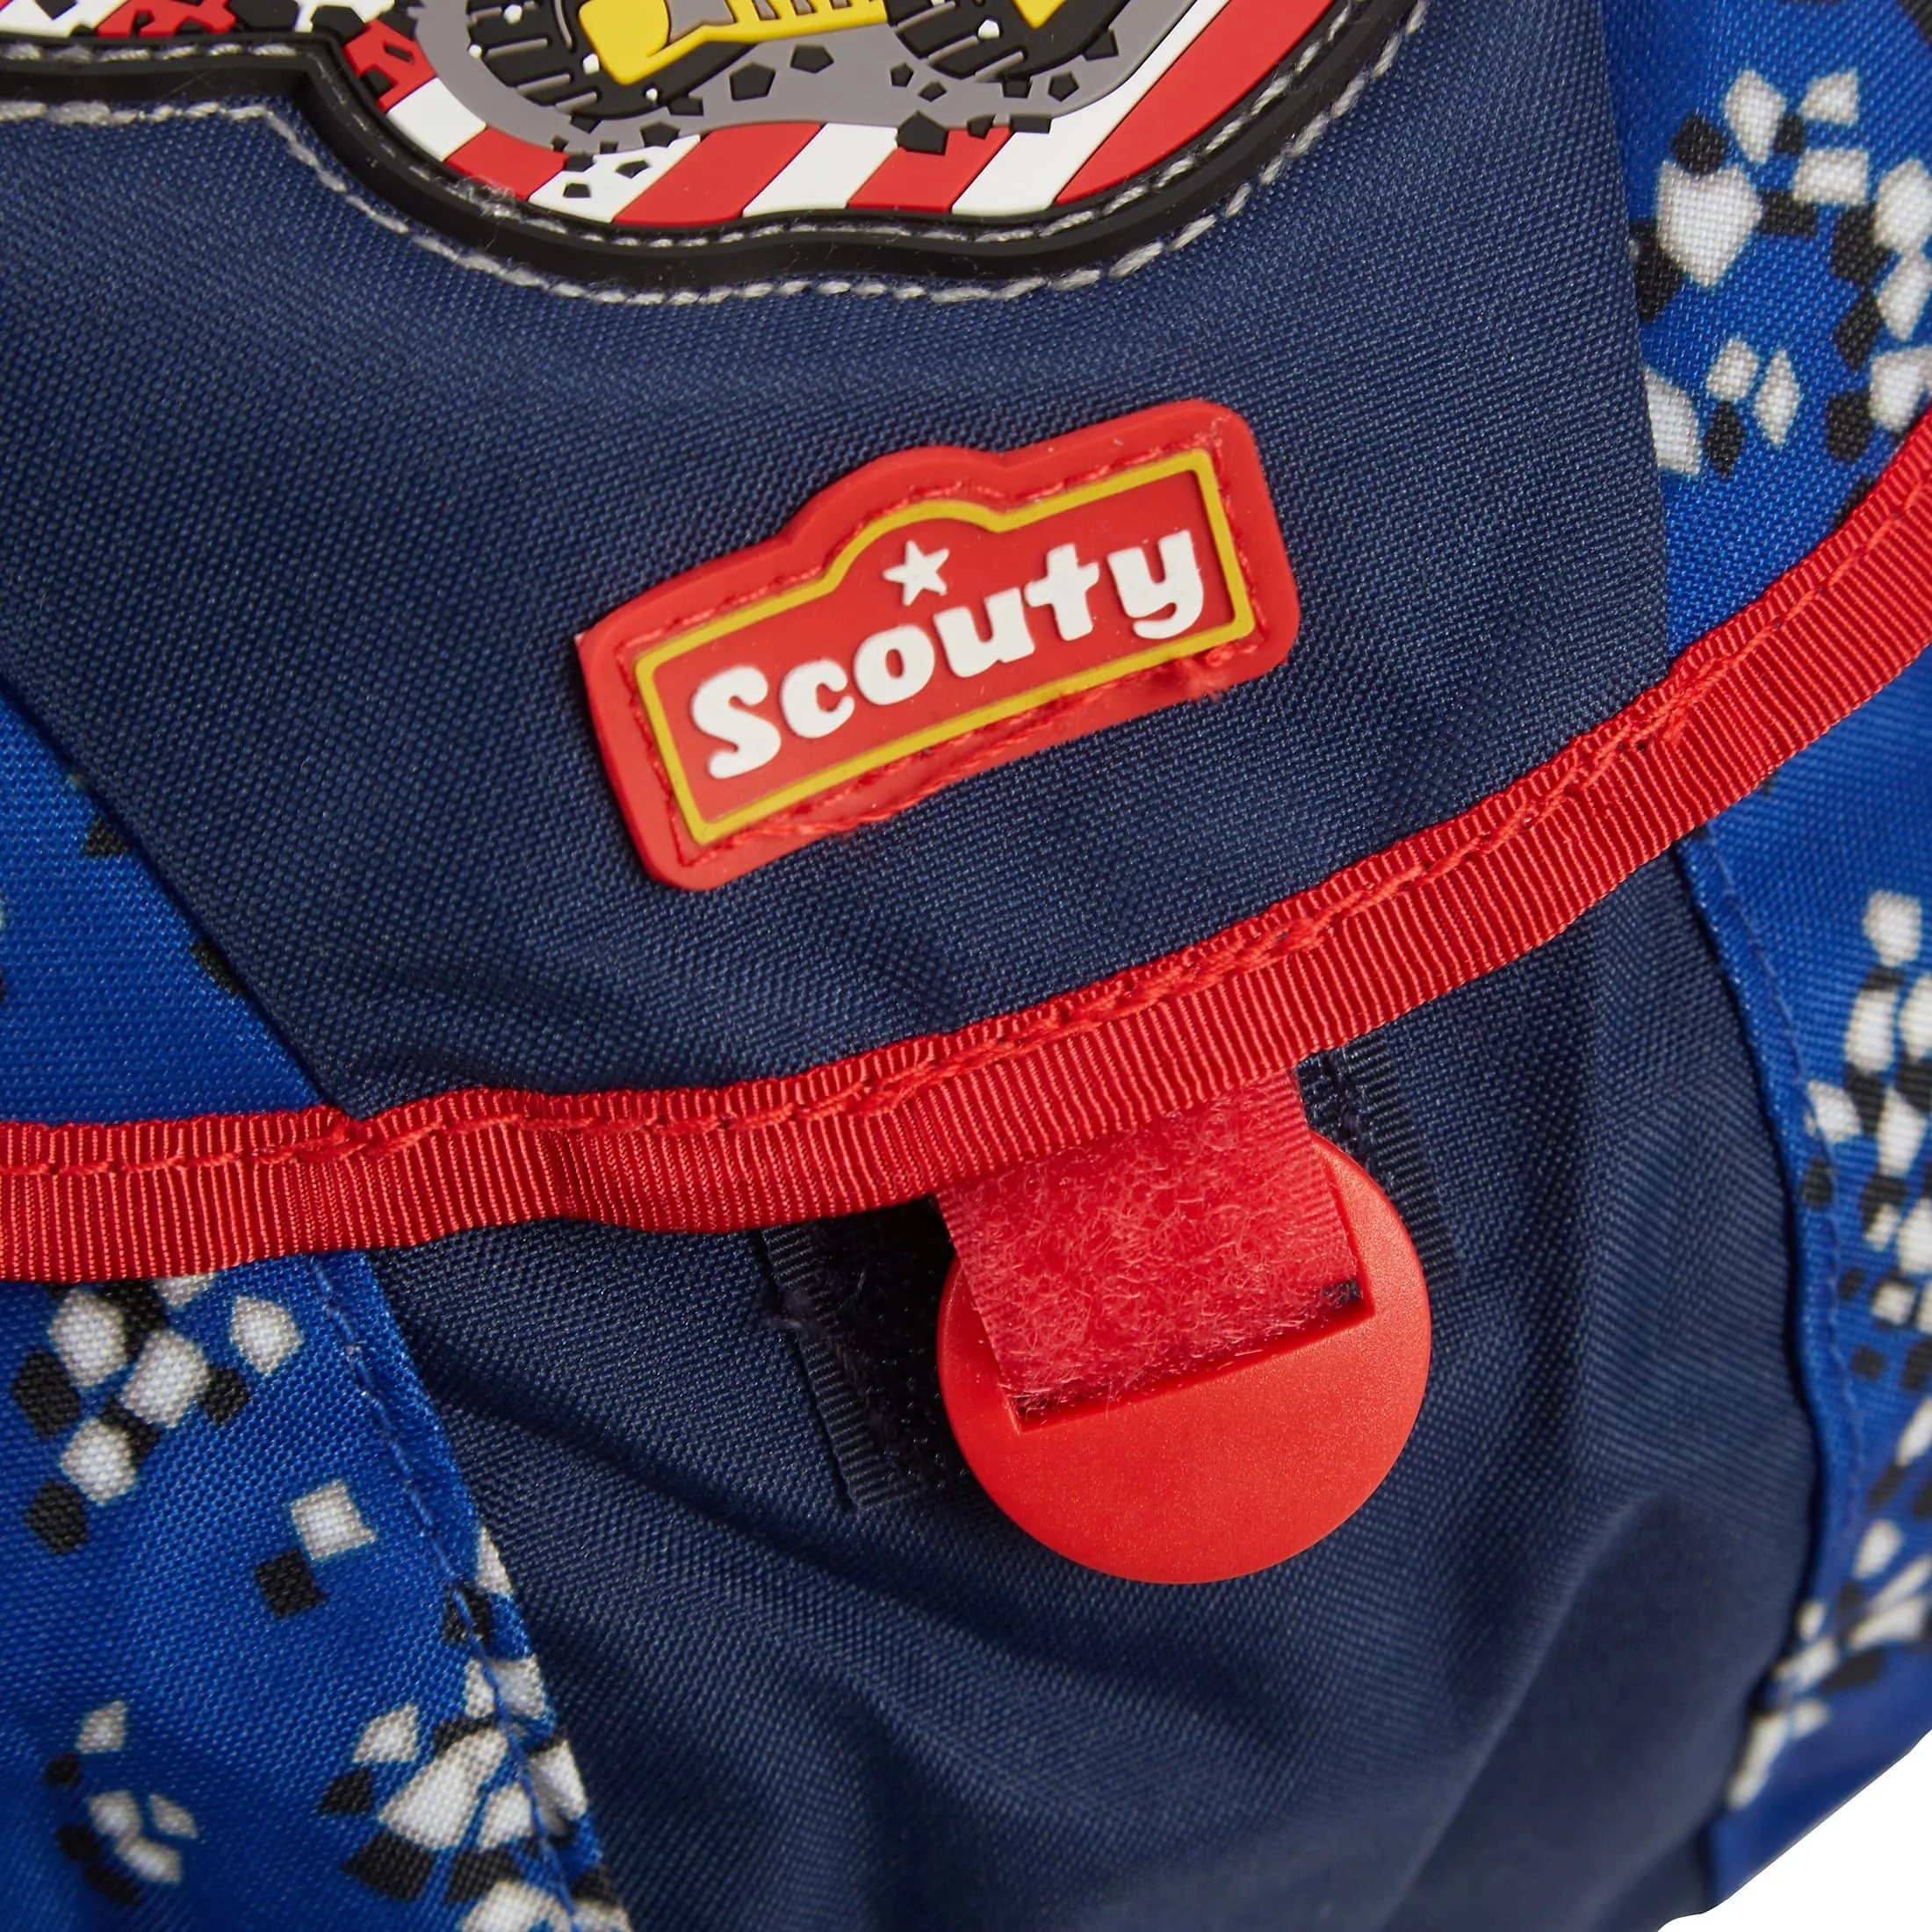 Scouty preschool Lucky backpack 24 cm - hippie